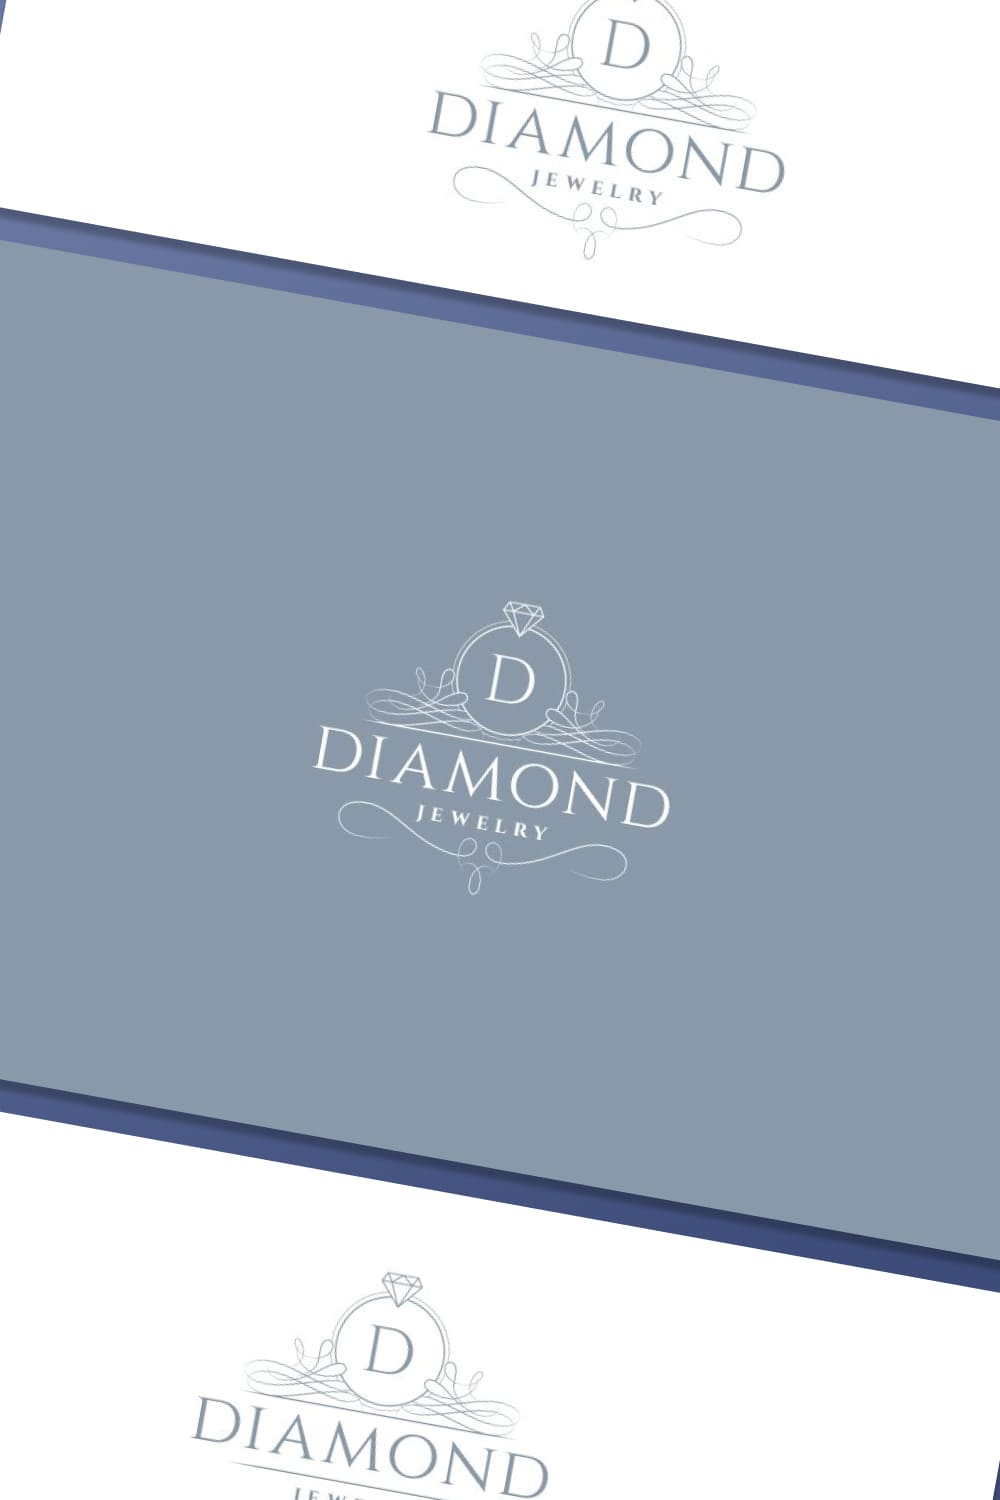 diamond jewelry logo for jewelry brand.